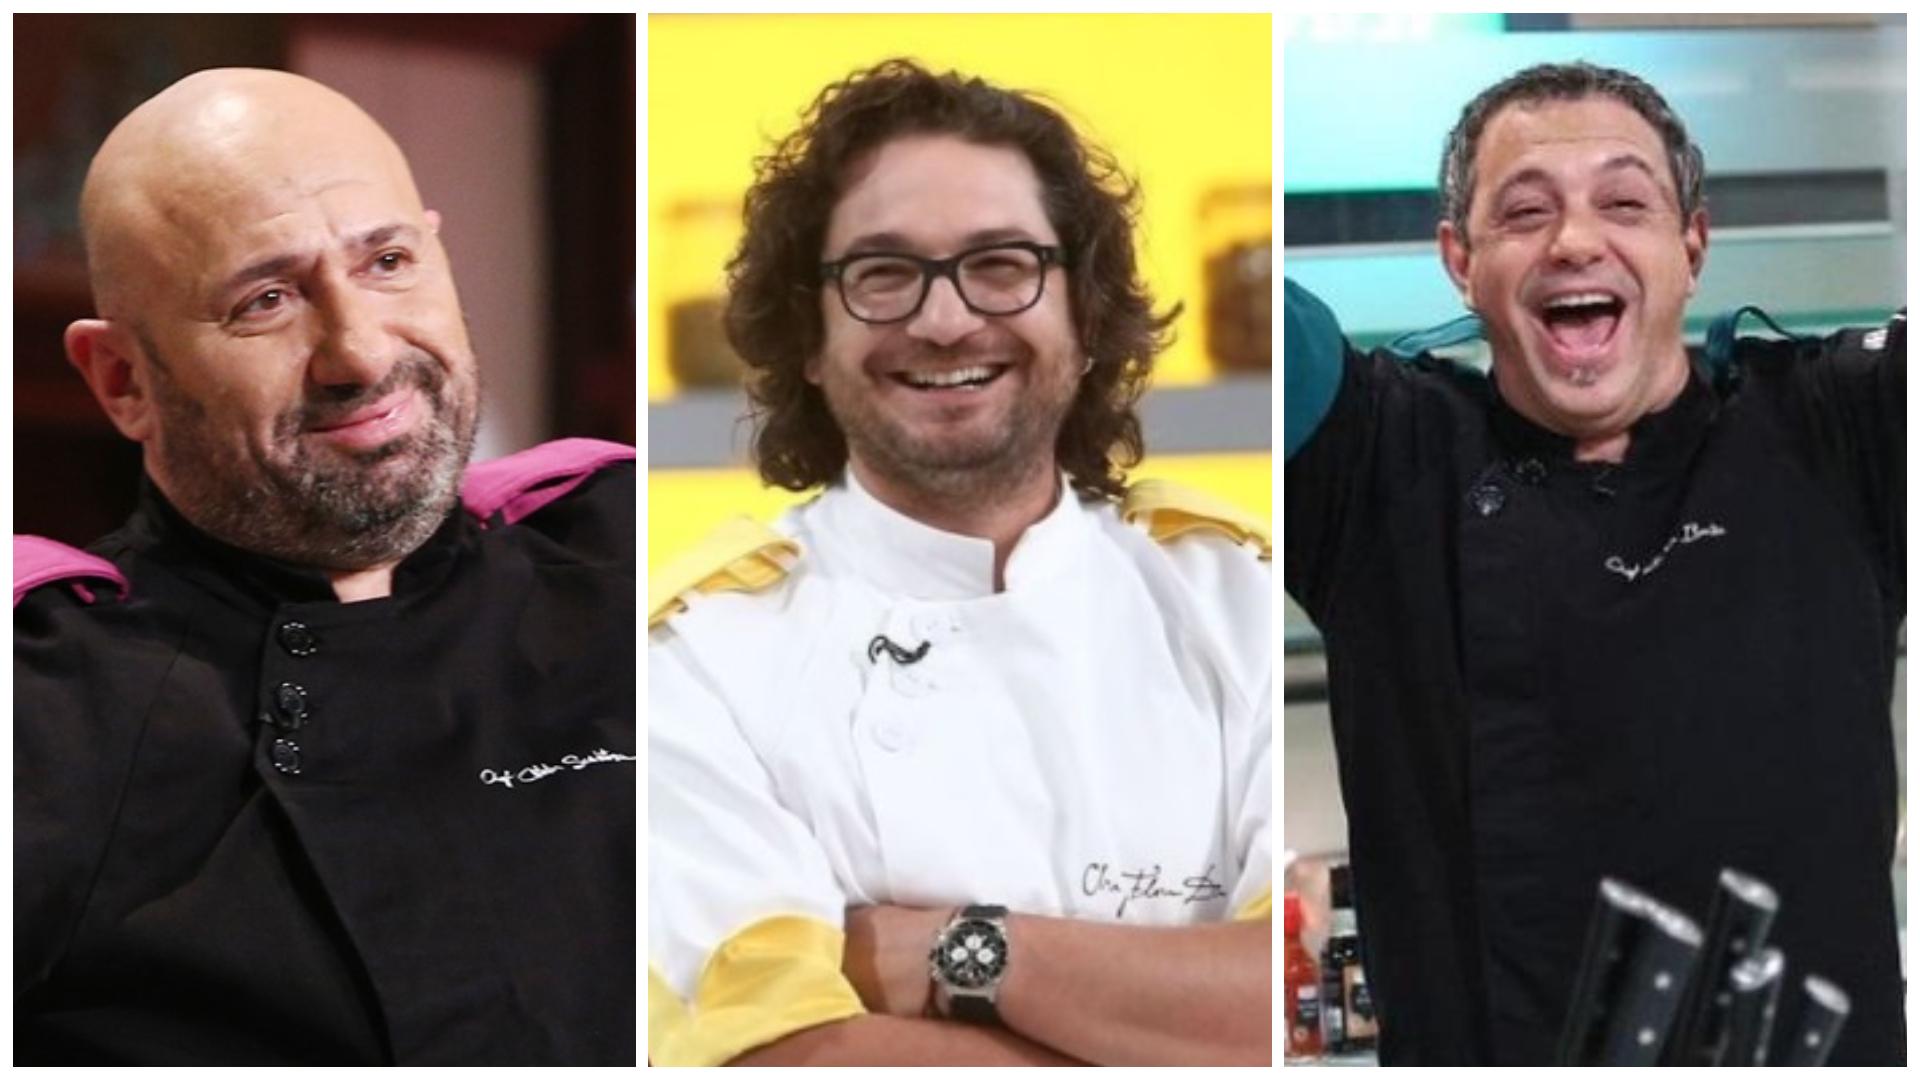 Chefii Florin Dumitrescu, Sorin Bontea și Cătălin Scărlătescu, în platoul emisiunii Chefi la cuțite, gătind